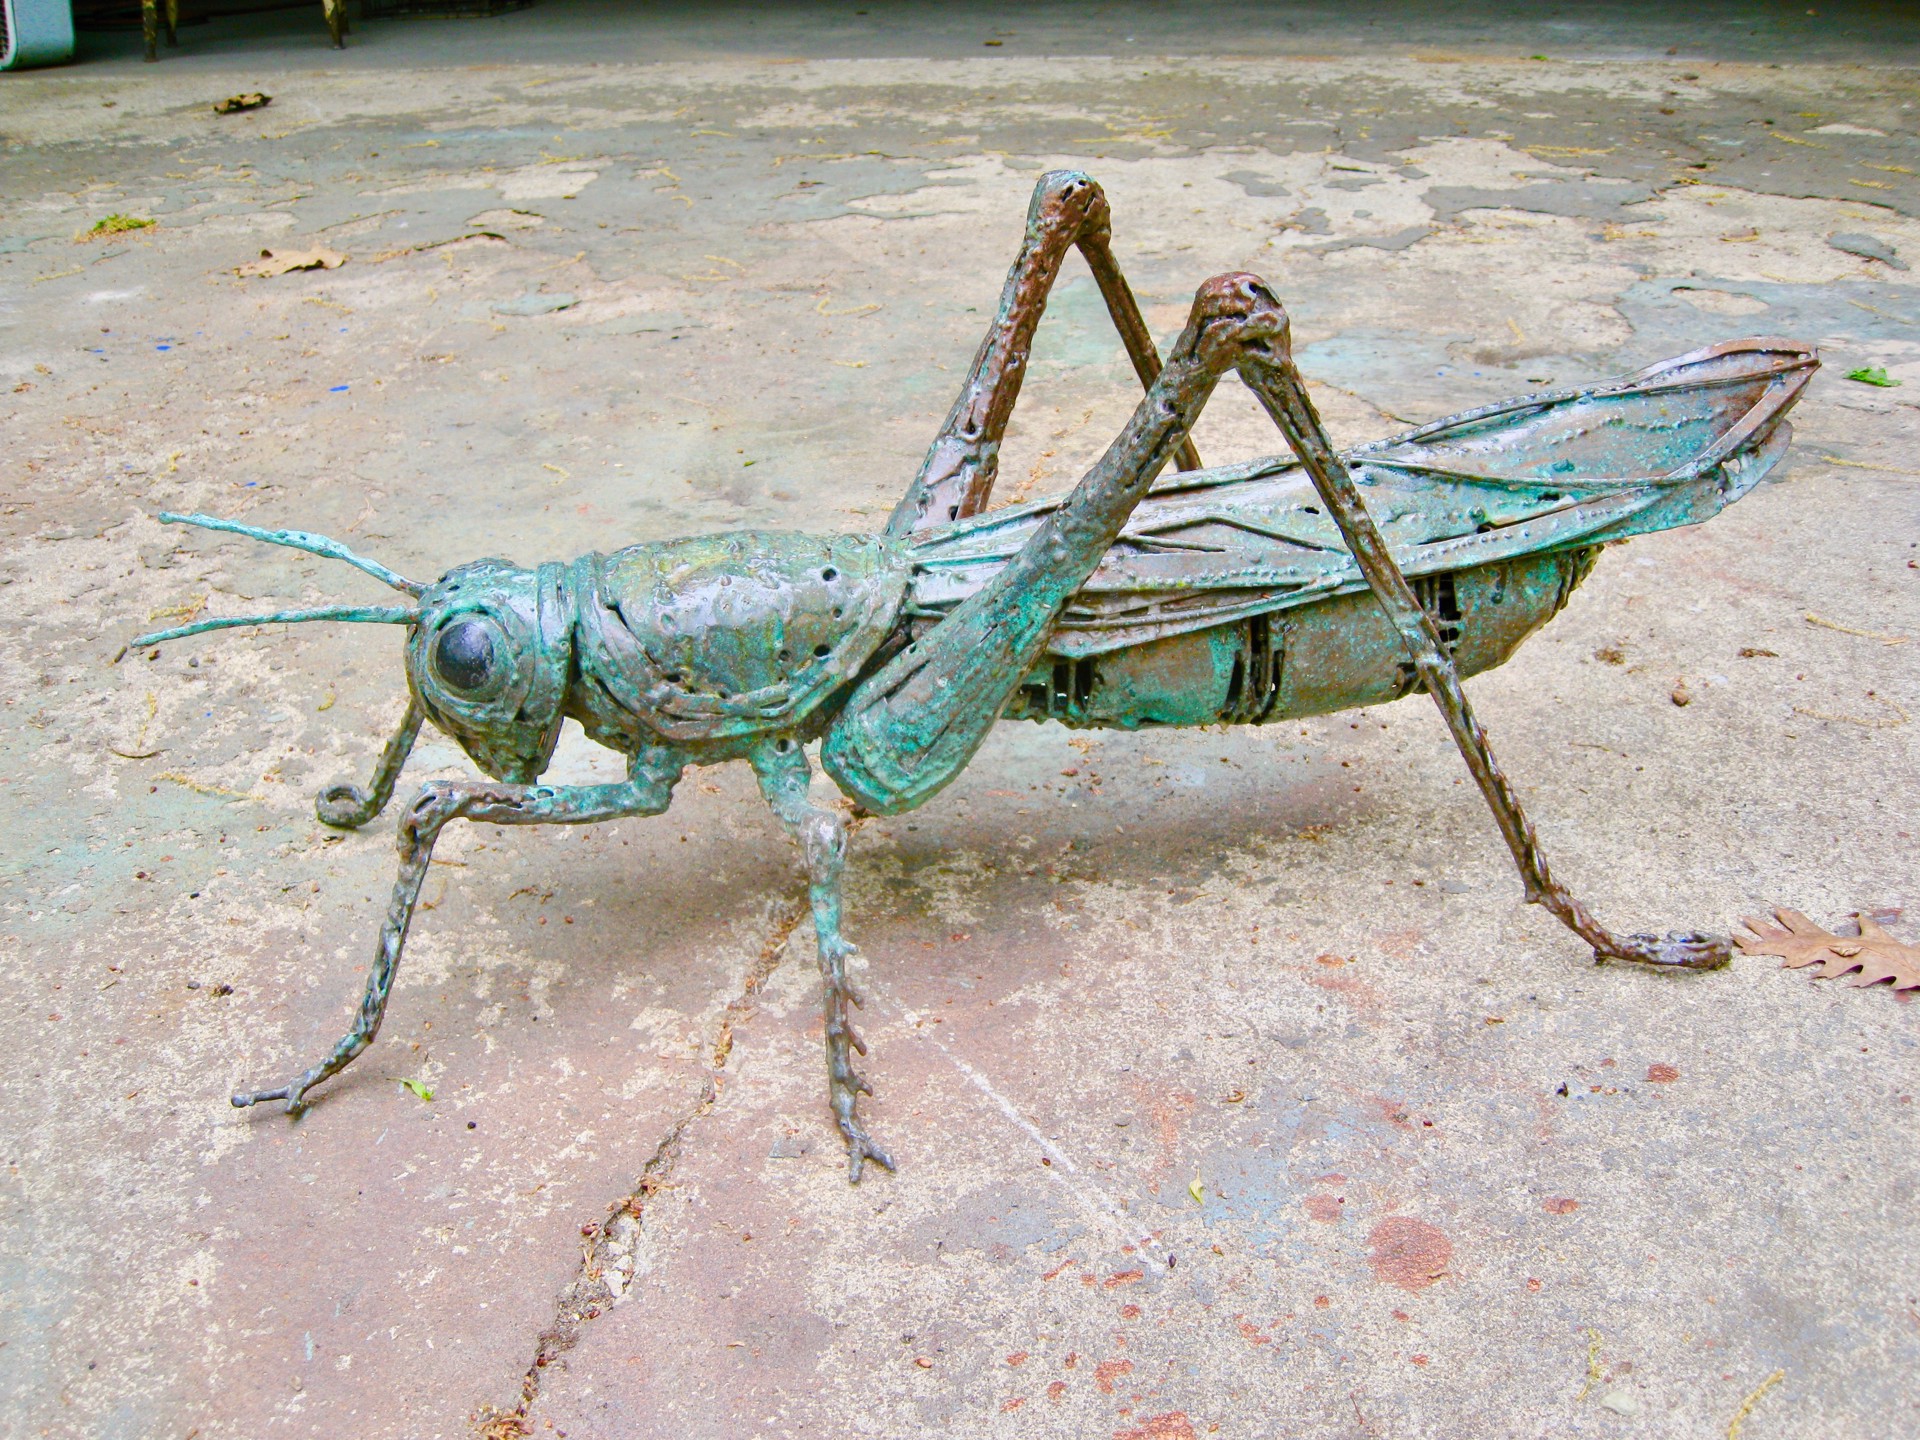 Grasshopper by William Allen